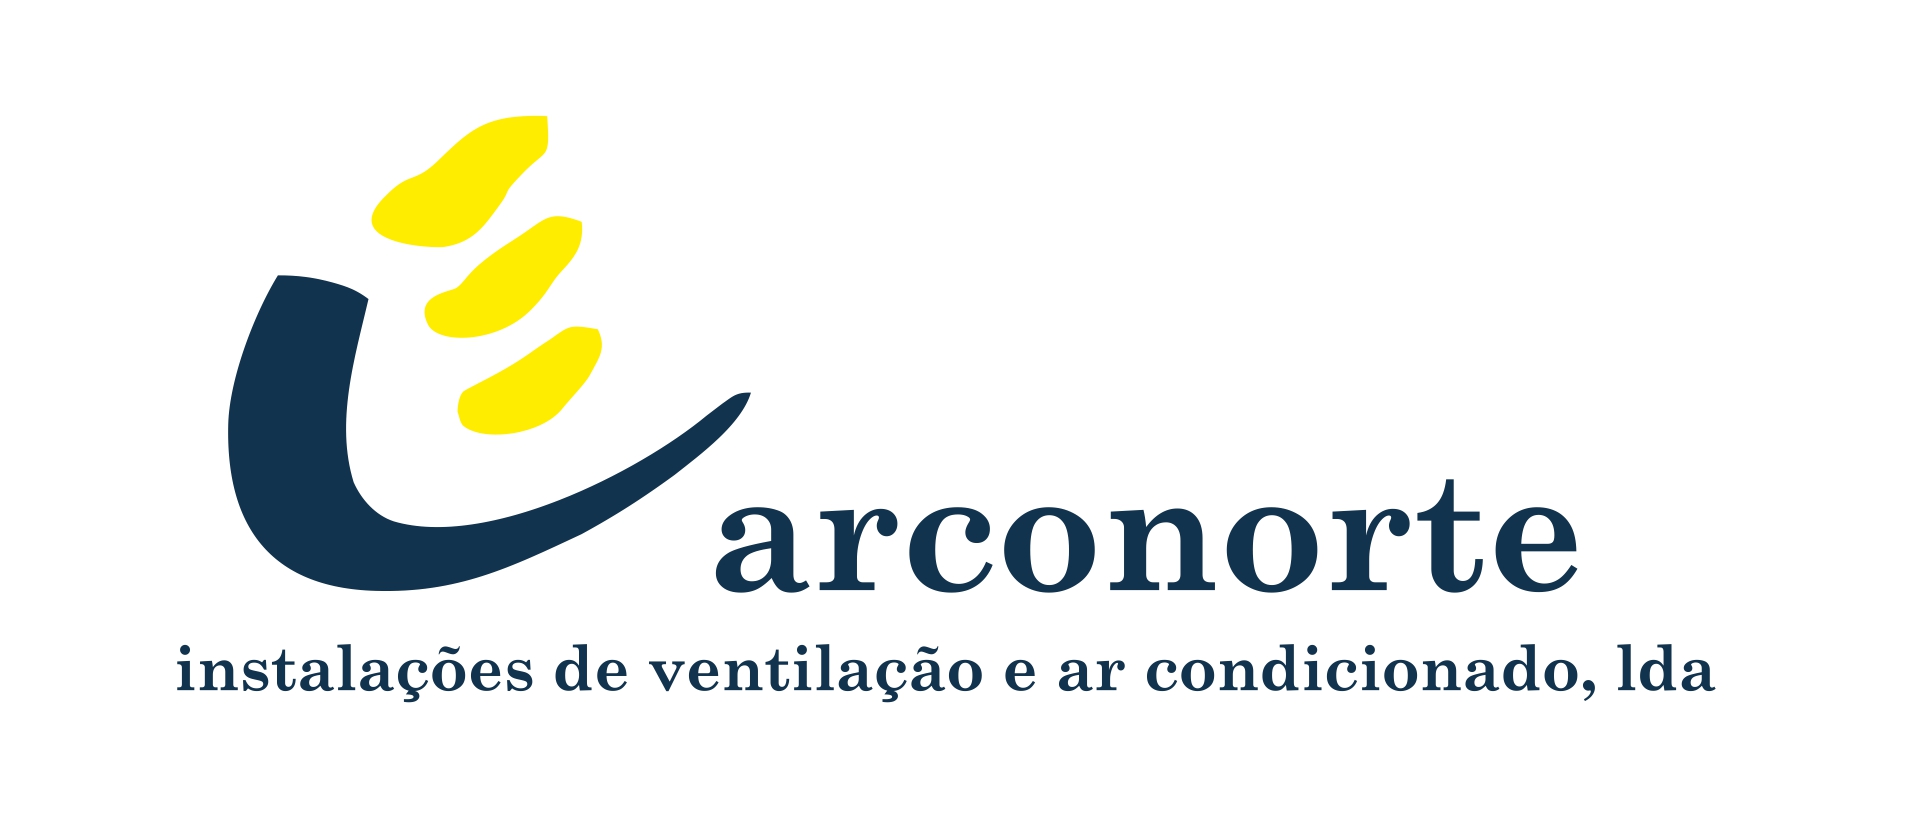 Arconorte